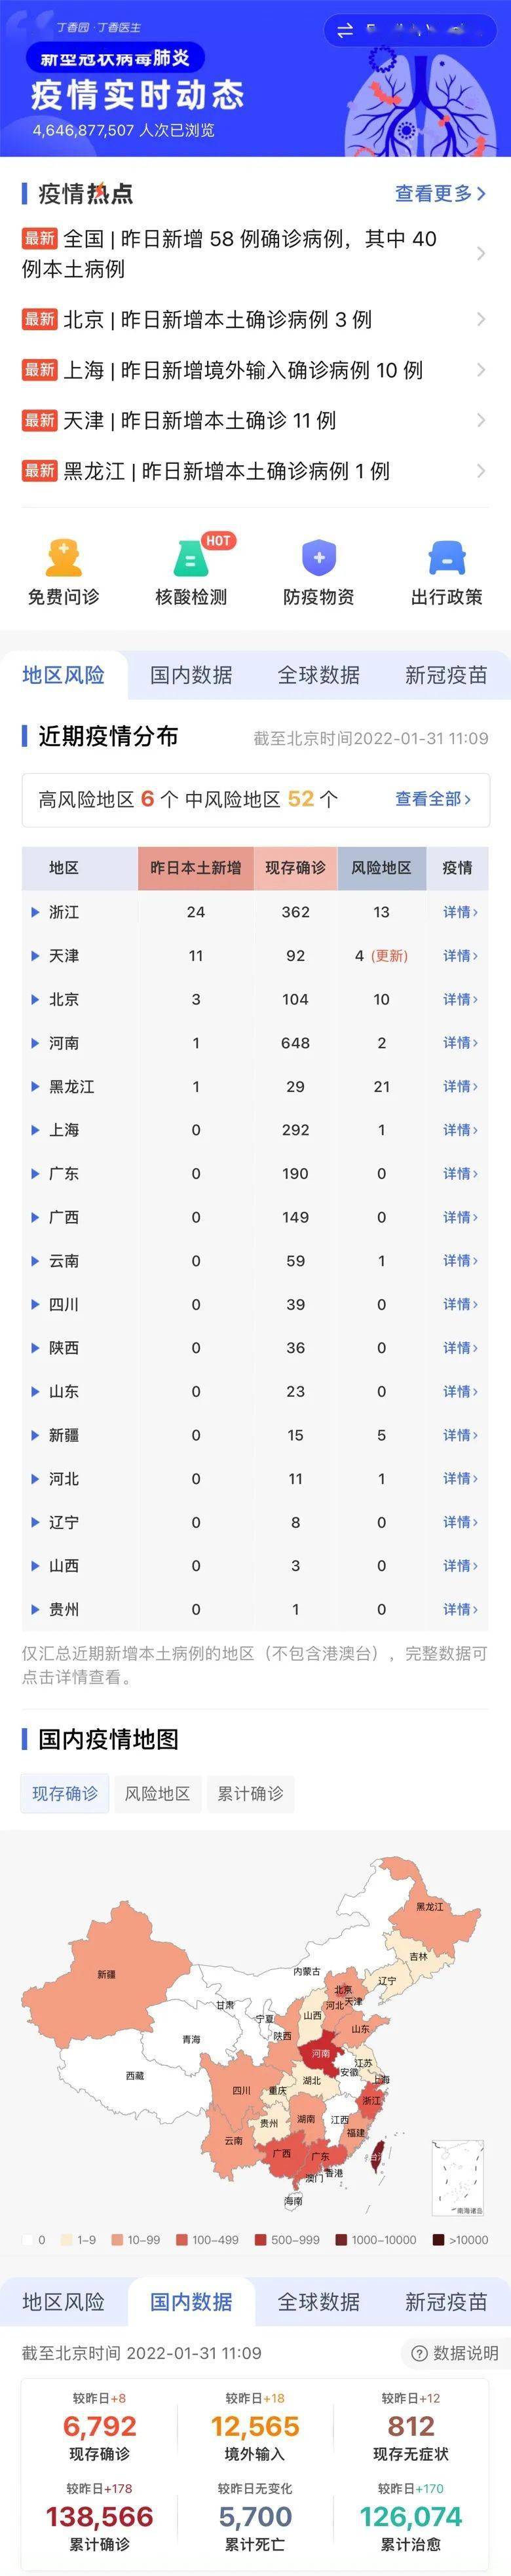 1 月 30 日新增本土确诊 40 例，北京问责冷链传播疫情问题相关人